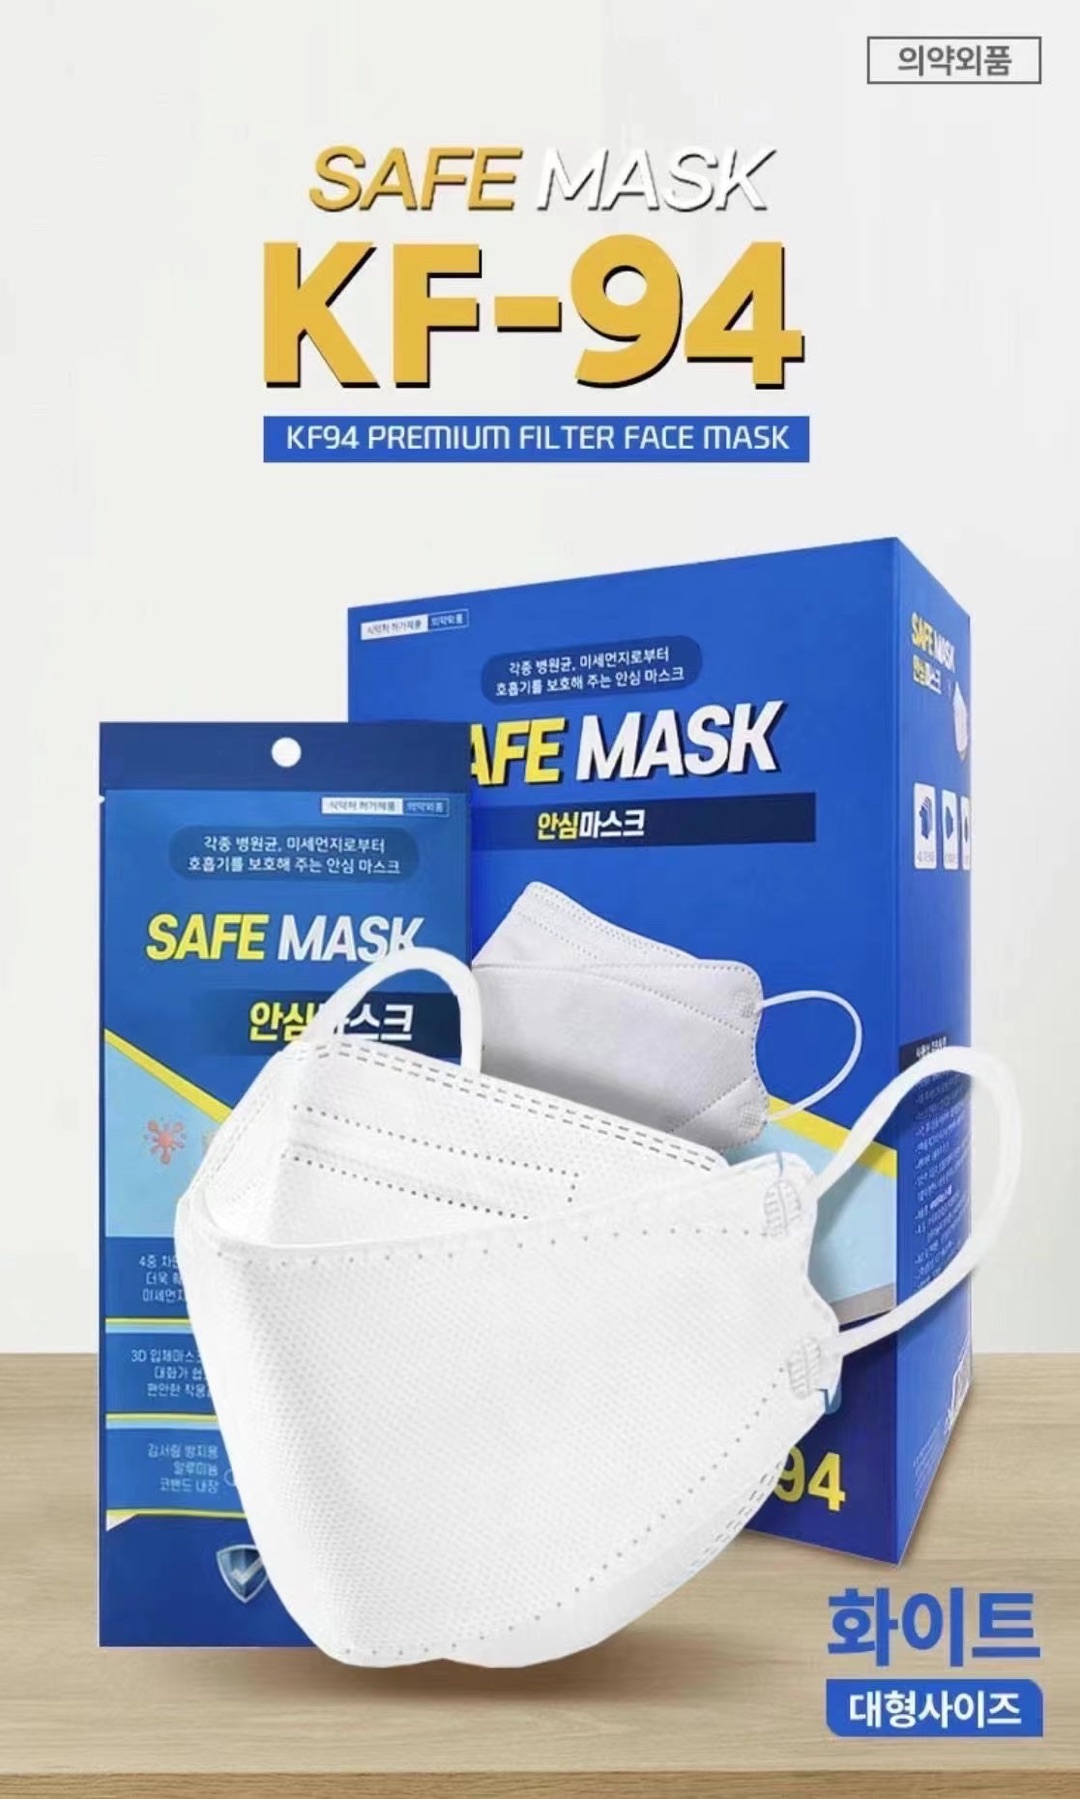 SAFE MASK | 【享贝家】（国内发货，一周内）韩国SAFE MASK KF-94口罩 白色 100片/盒 157.62元 商品图片